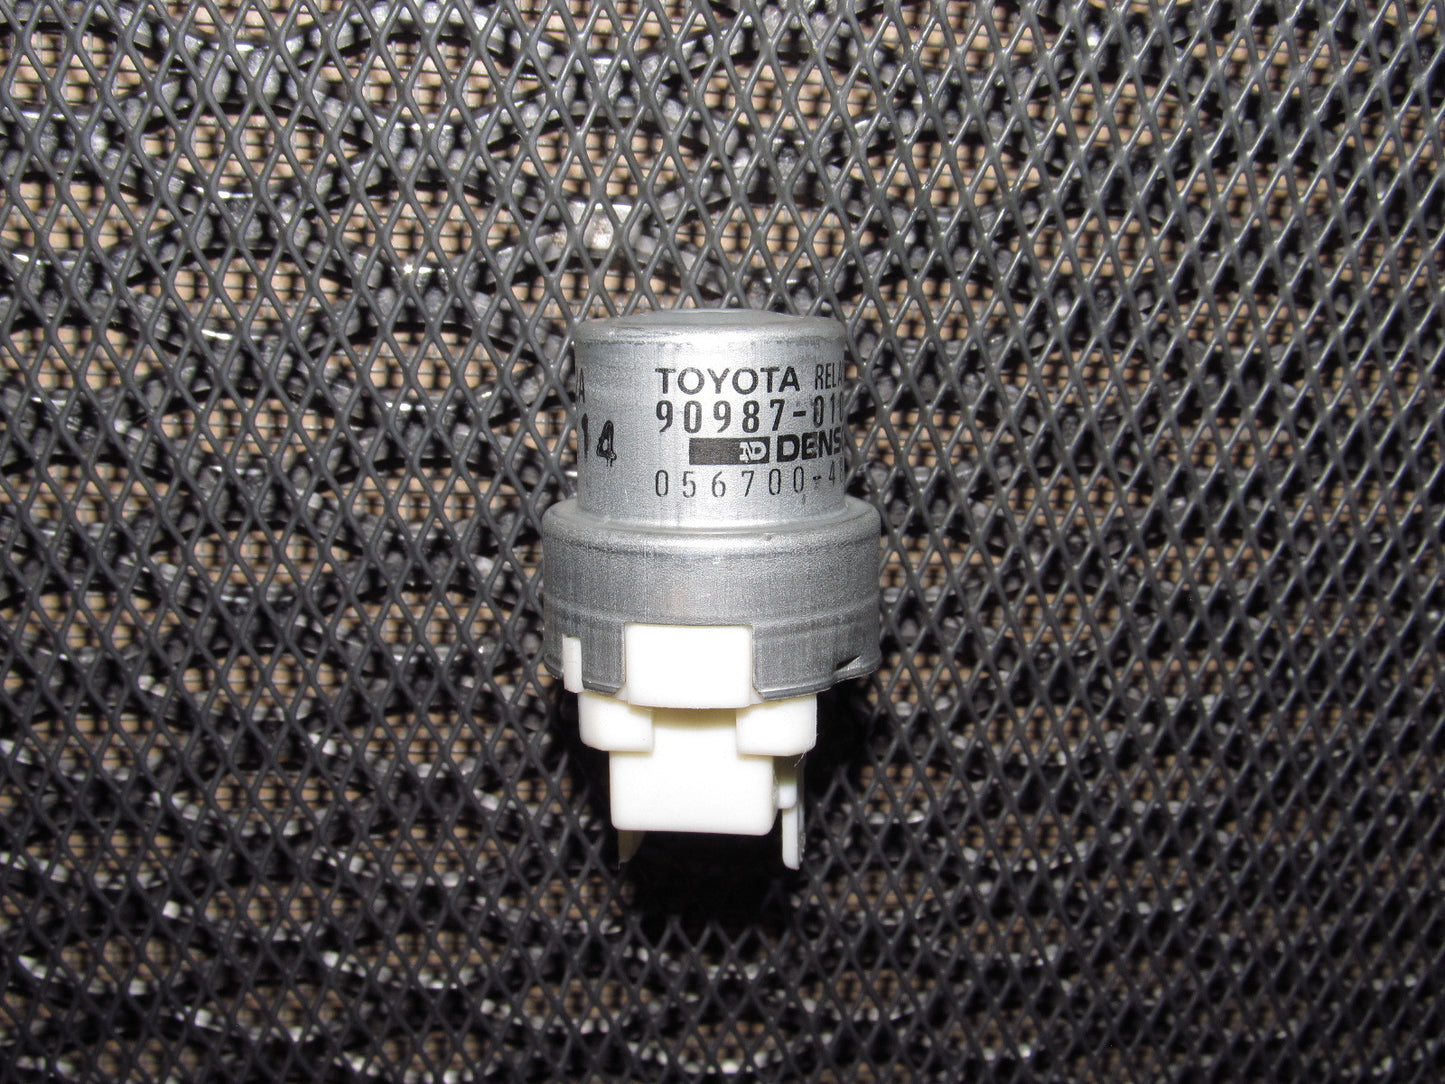 Toyota & Lexus Universal Relay - 90987-01003 - 56700-4800